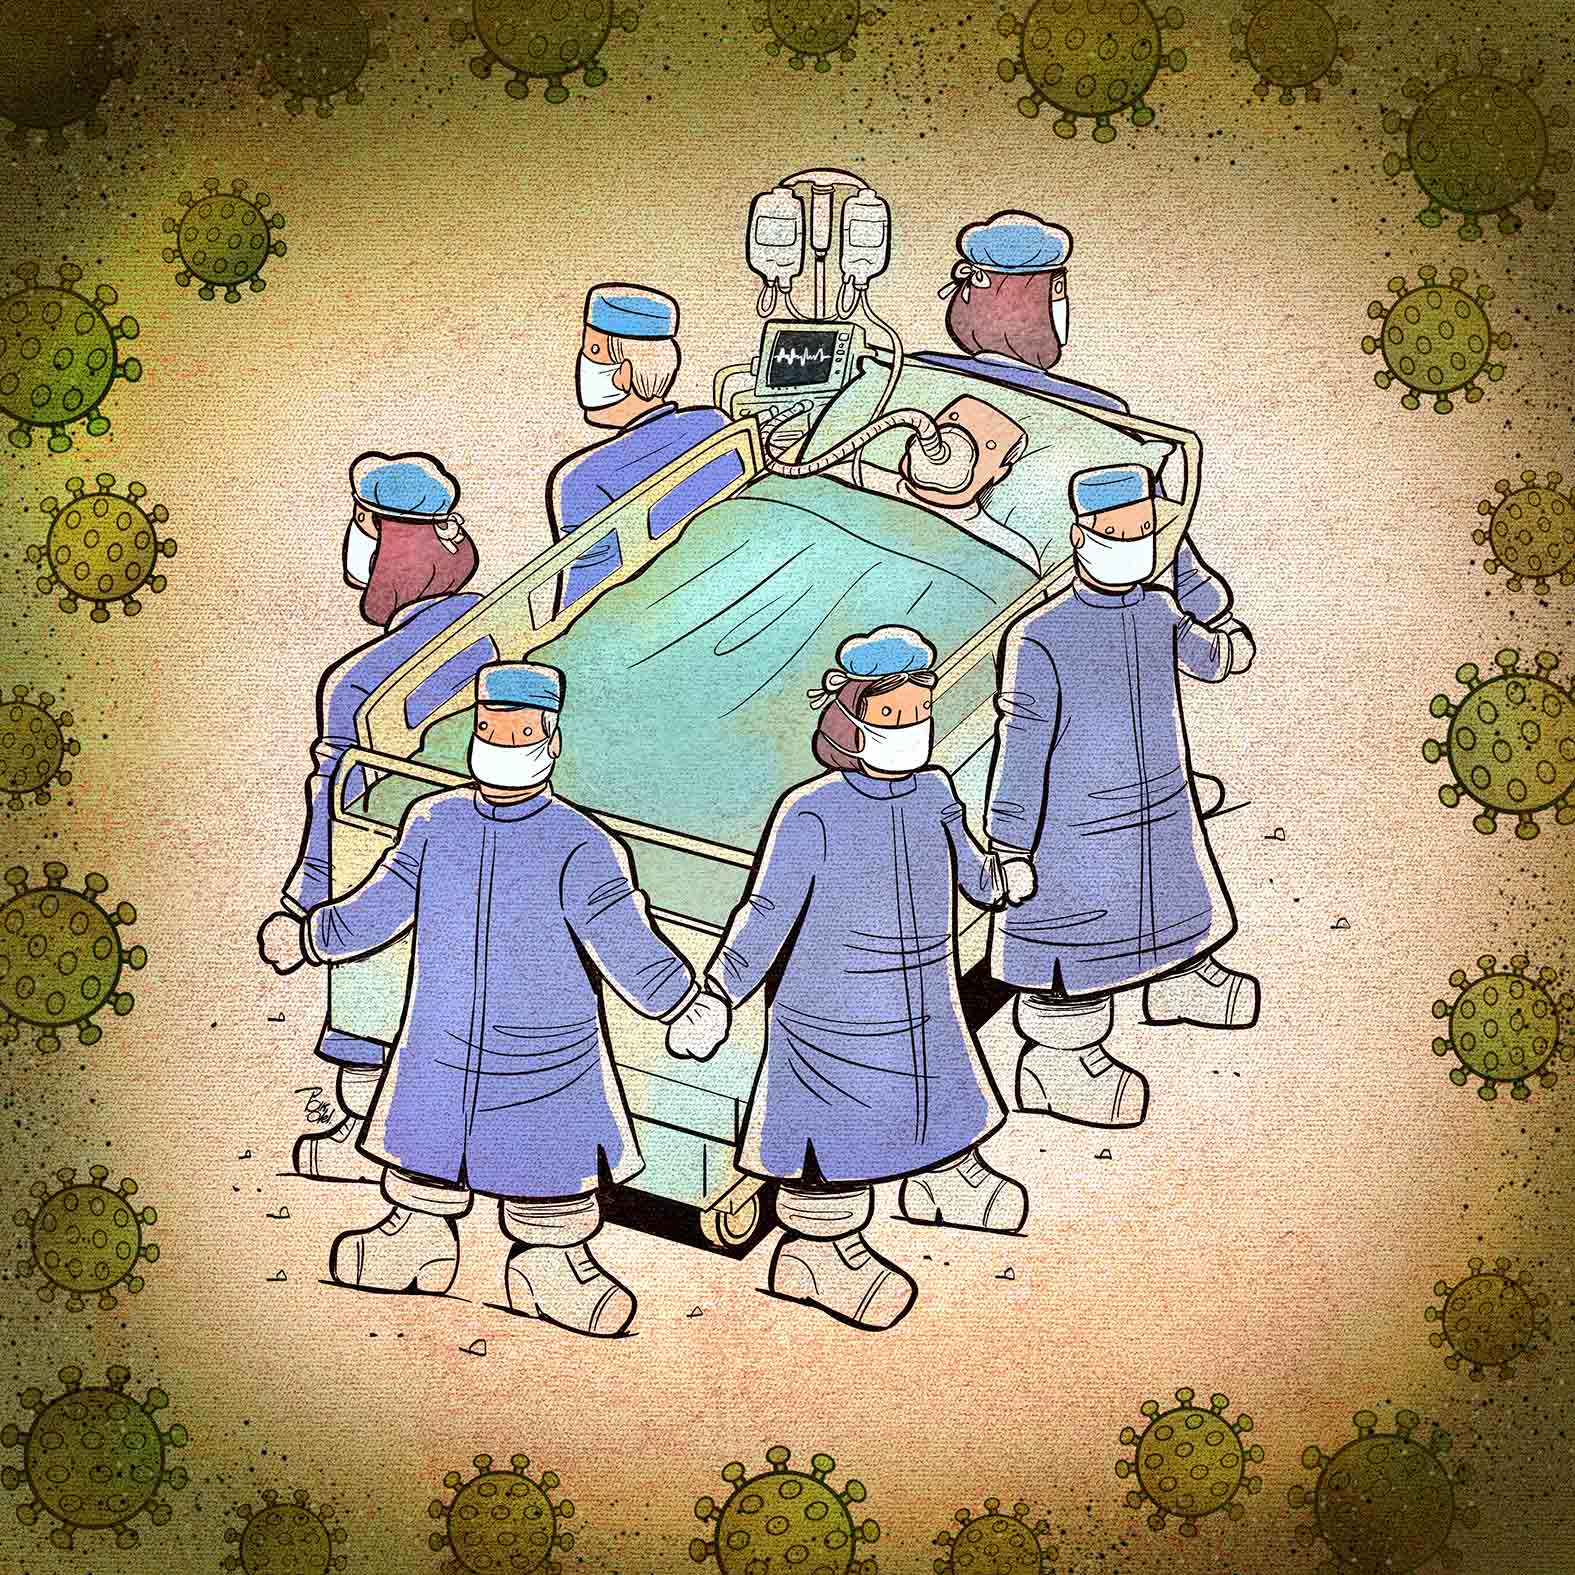 ملائكة الرحمة.. رسوم تعكس جهود الطواقم الطبية في محاربة فيروس كورونا